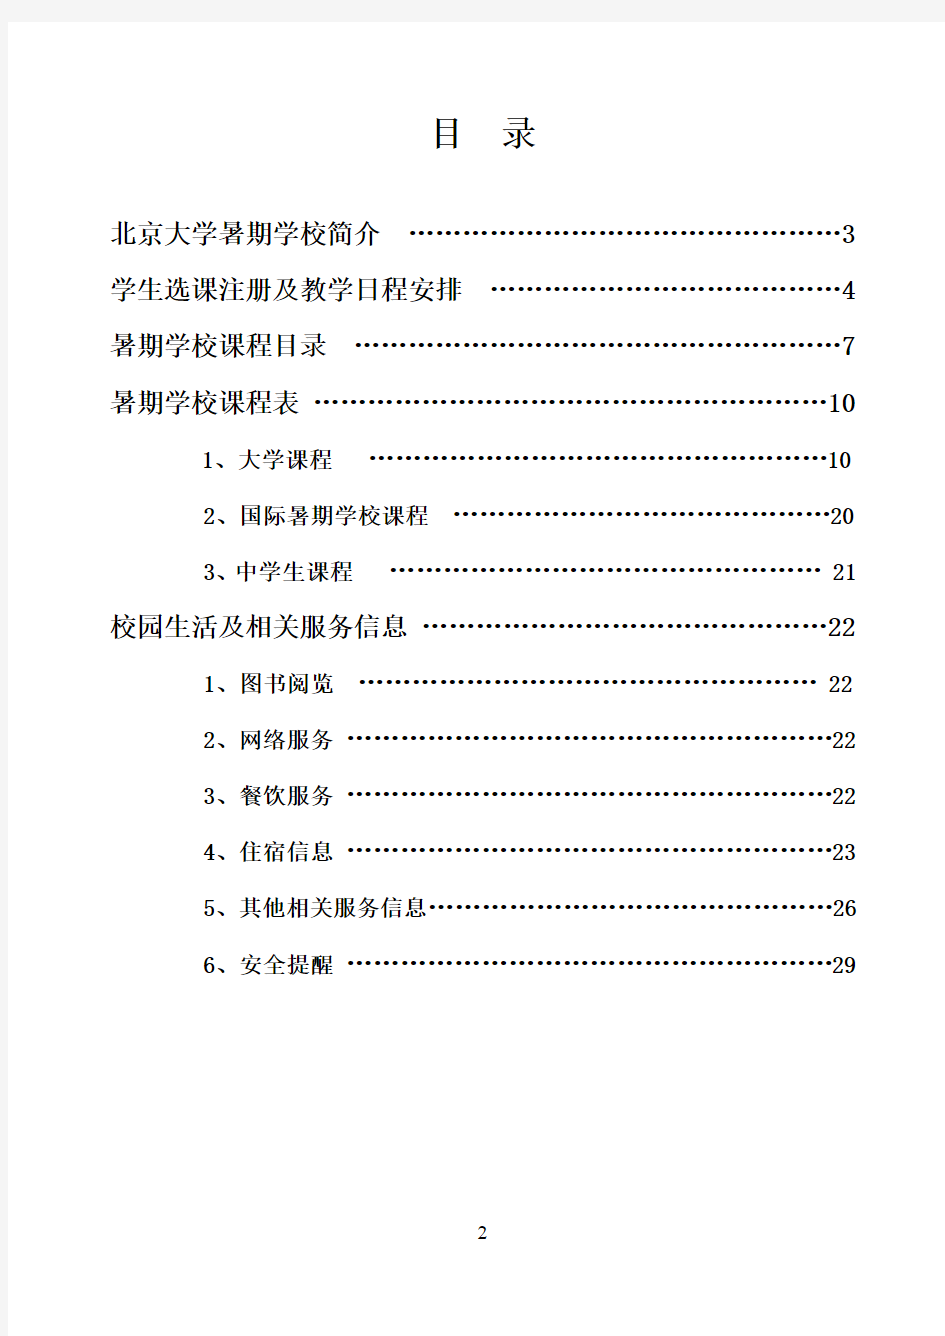 北京大学暑期学校学生手册